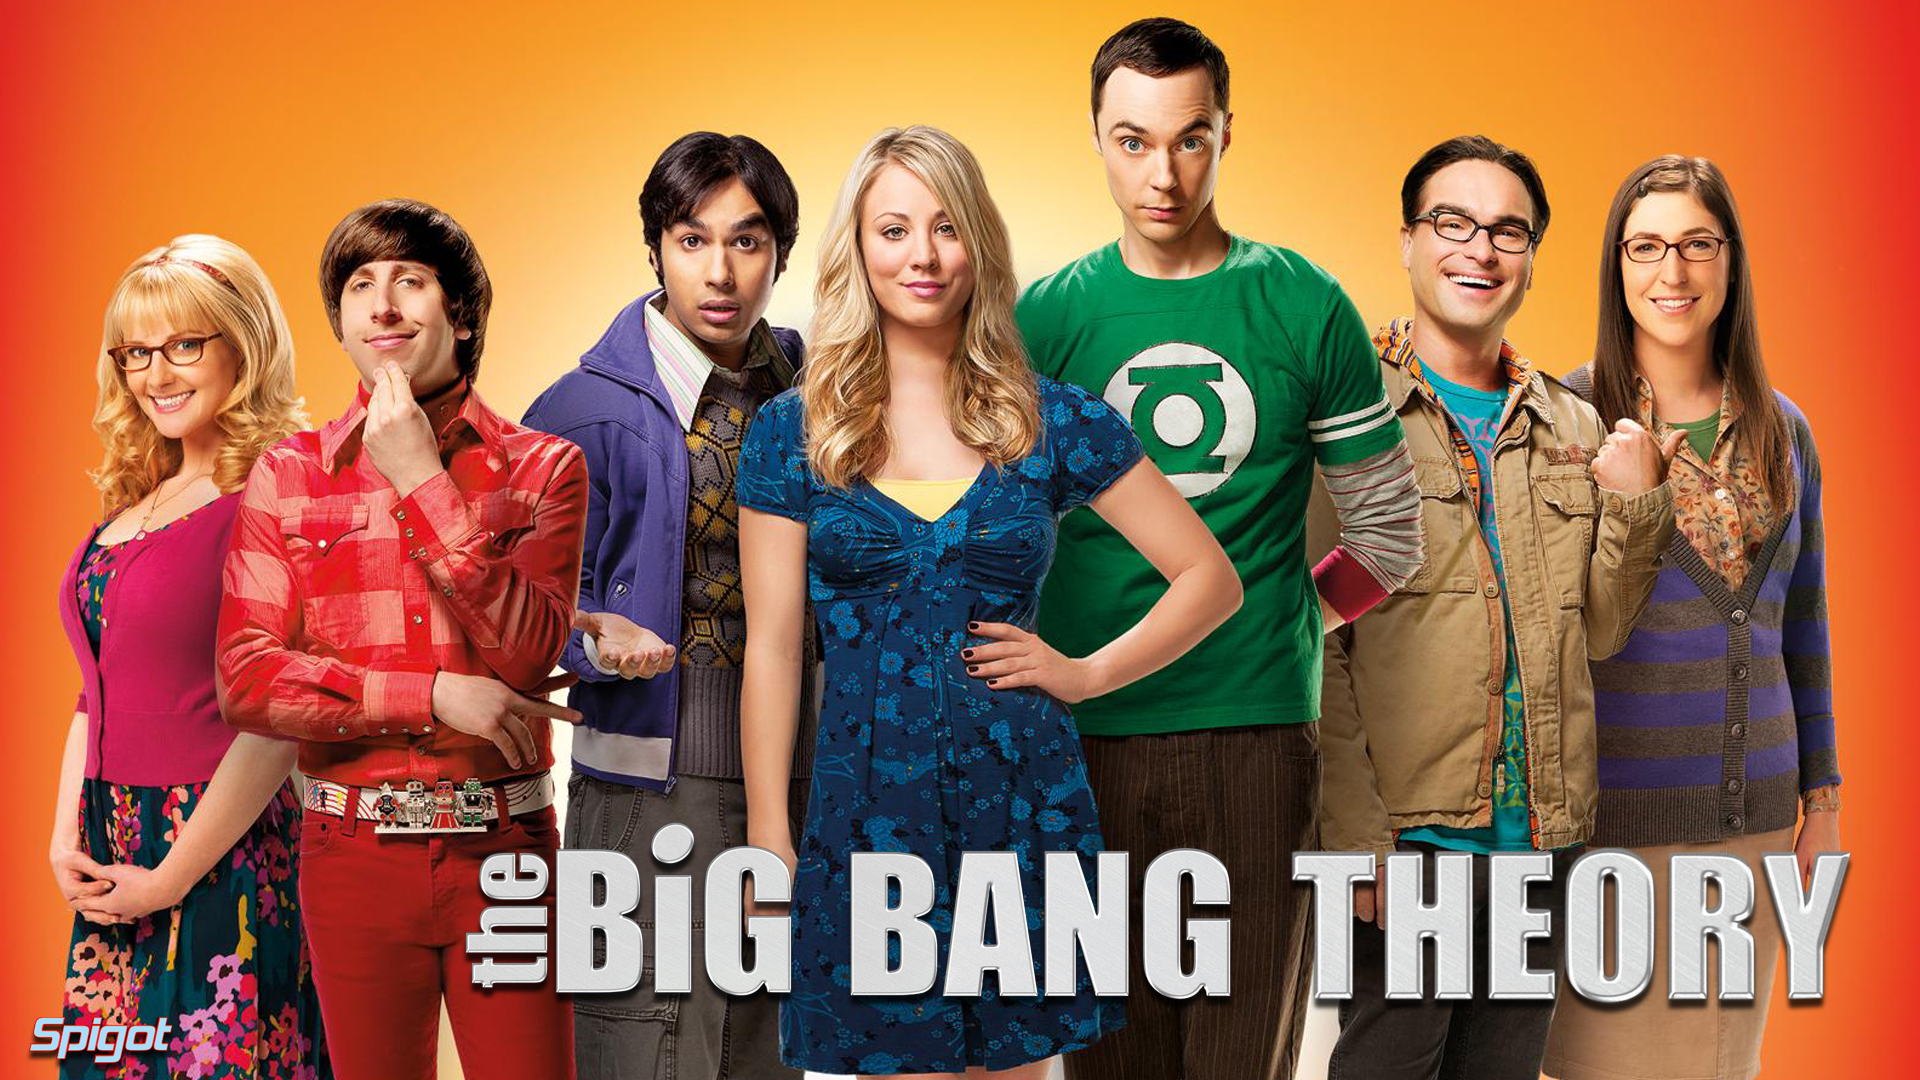 Big Bang Theory Song Download